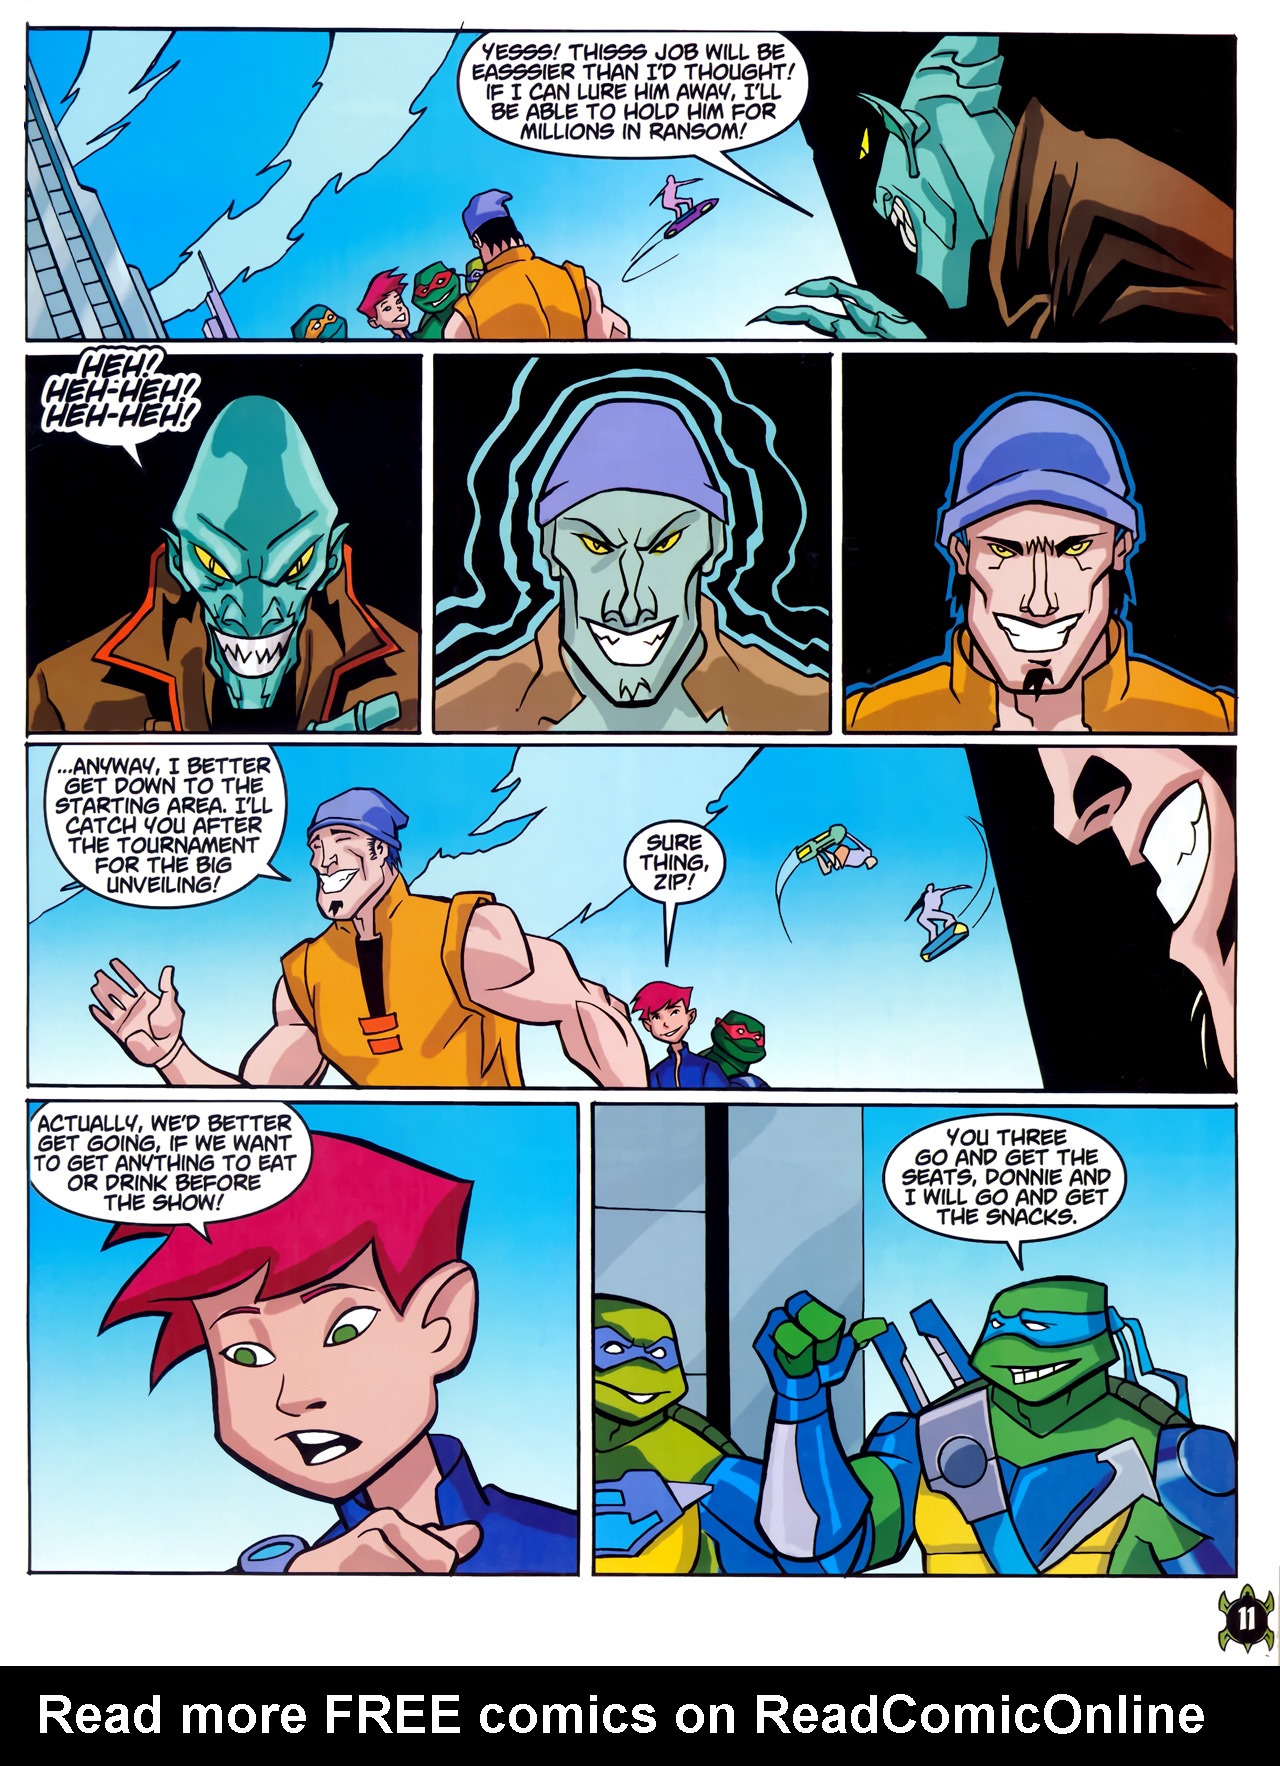 Read online Teenage Mutant Ninja Turtles Comic comic -  Issue #1 - 9